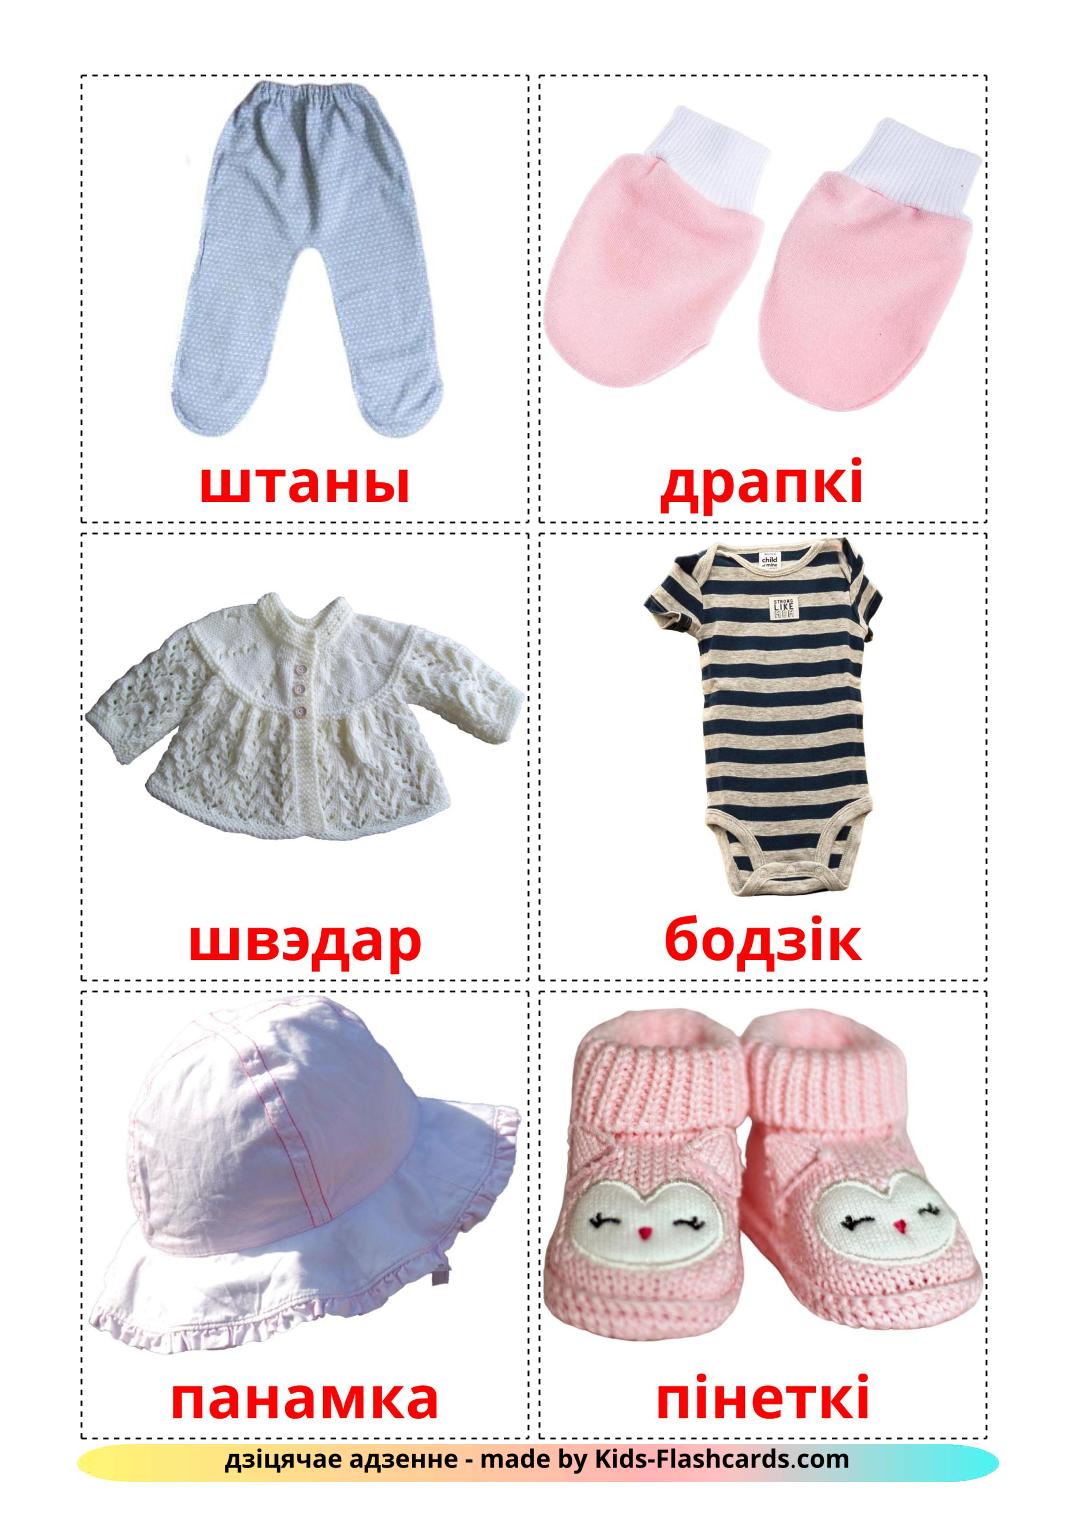 Babykleren - 11 gratis printbare wit-russische kaarten